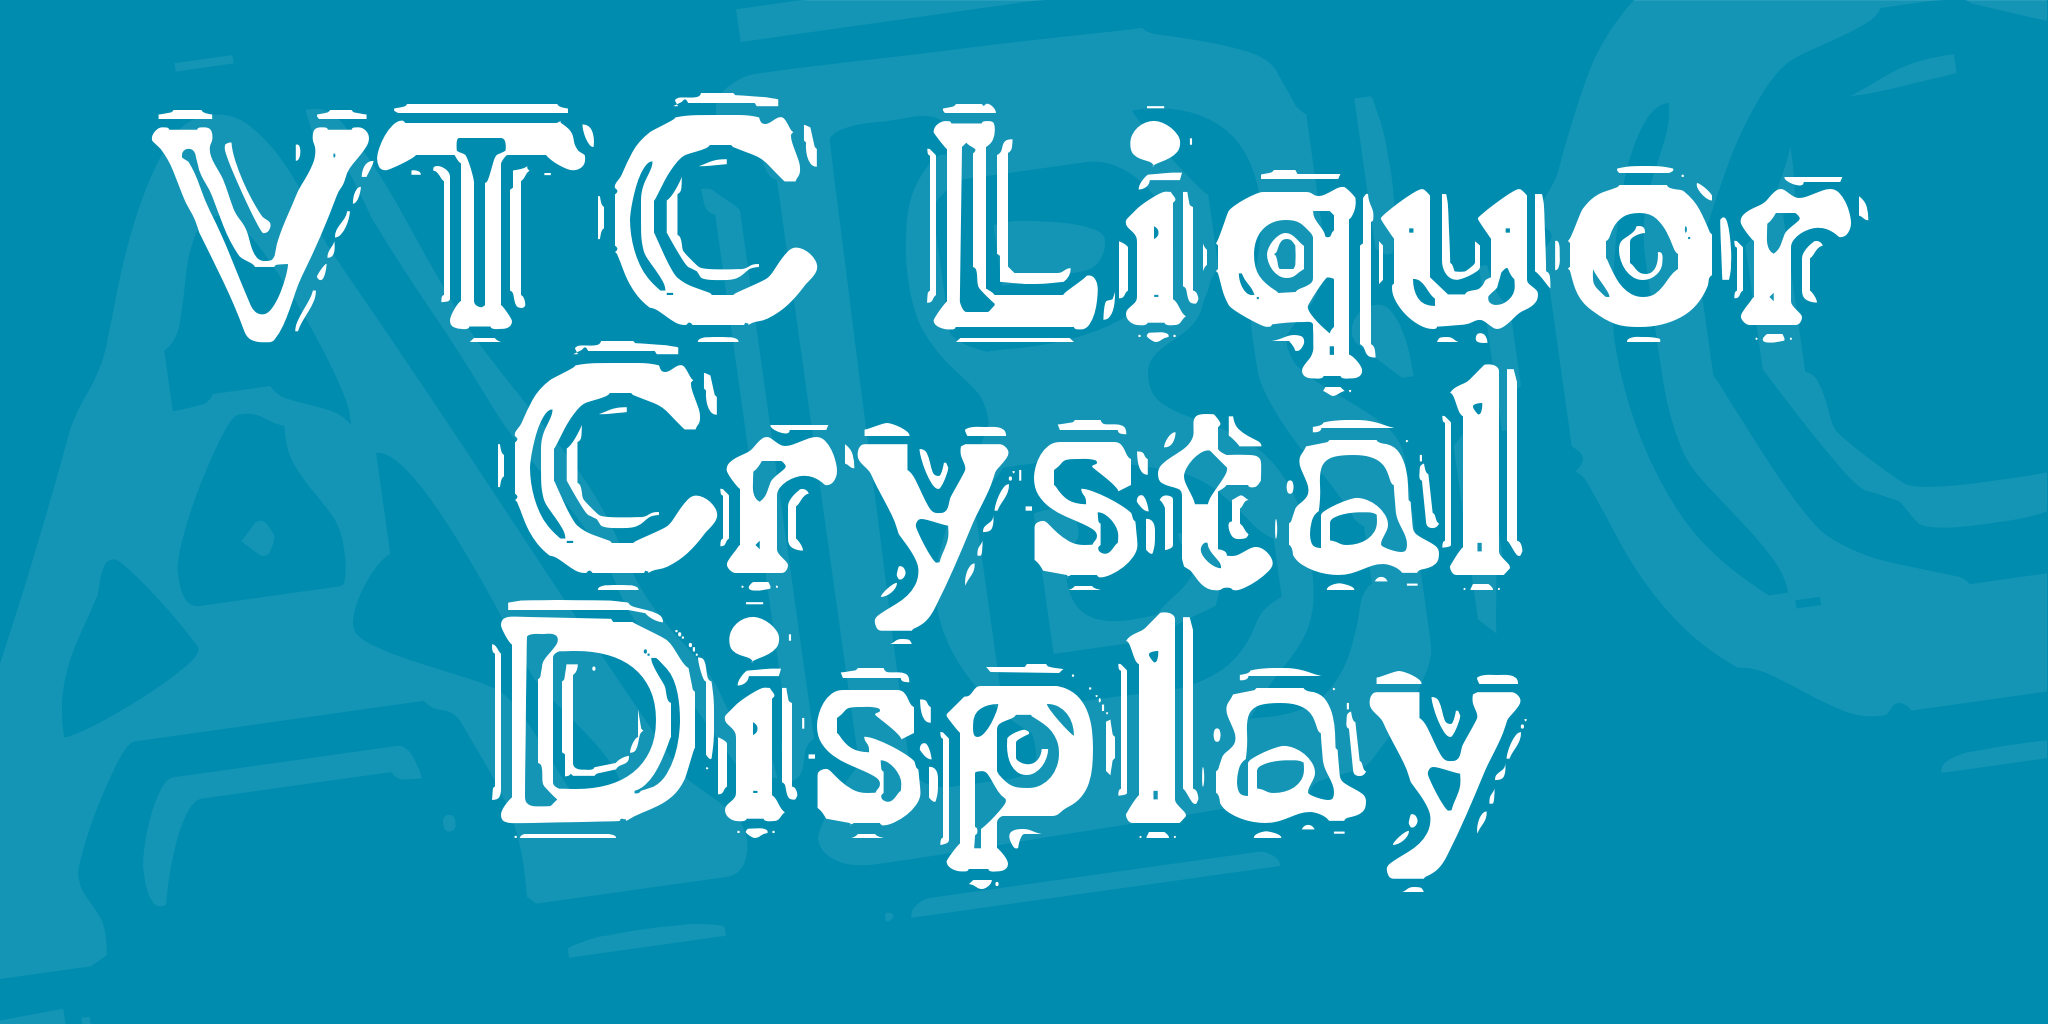 Vtc Liquor Crystal Display